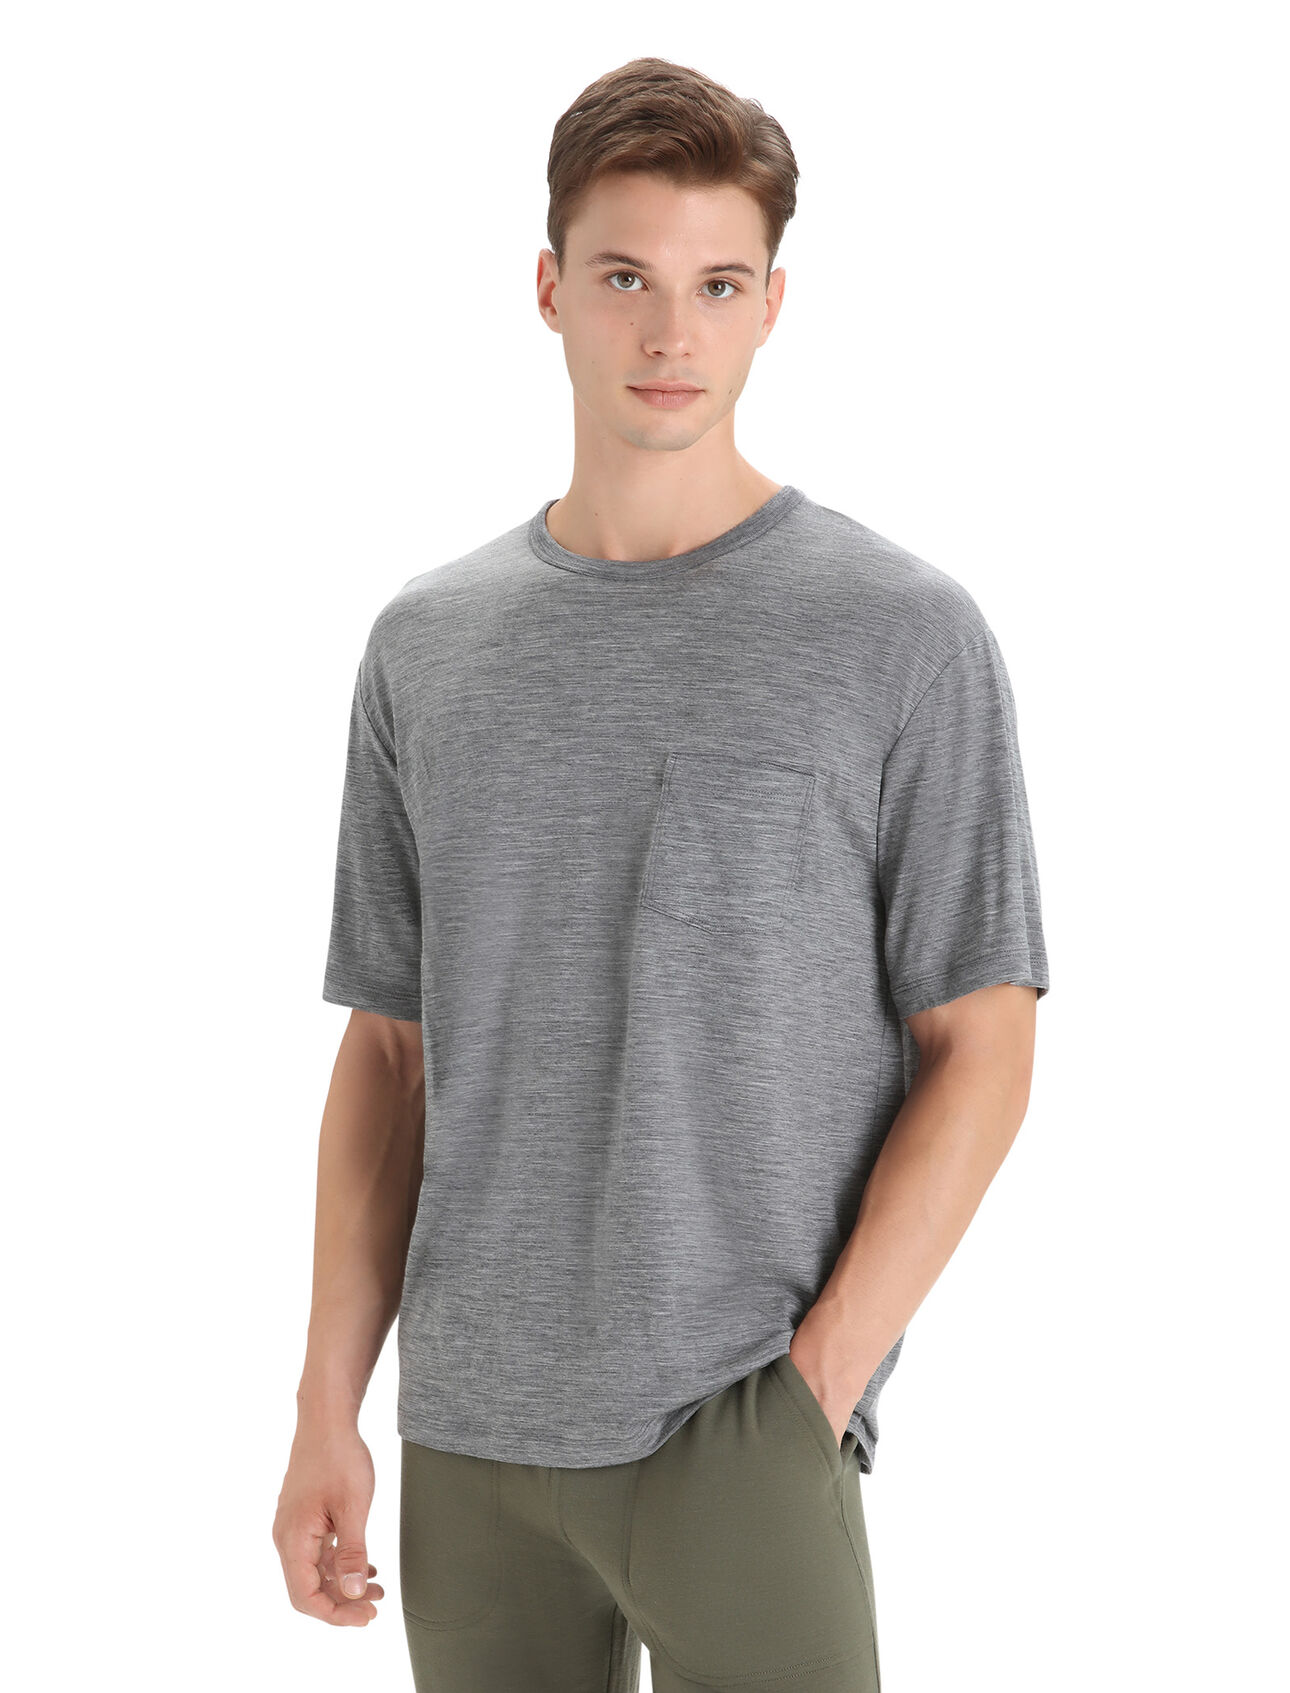 Herr Granary kortärmad t-shirt i merino med ficka Granary kortärmad t-shirt med ficka är en klassisk tröja med en avslappnad passform och mjuk, ventilerande 100% merinoull. Det är ett självklart plagg för vardaglig komfort och stil. 